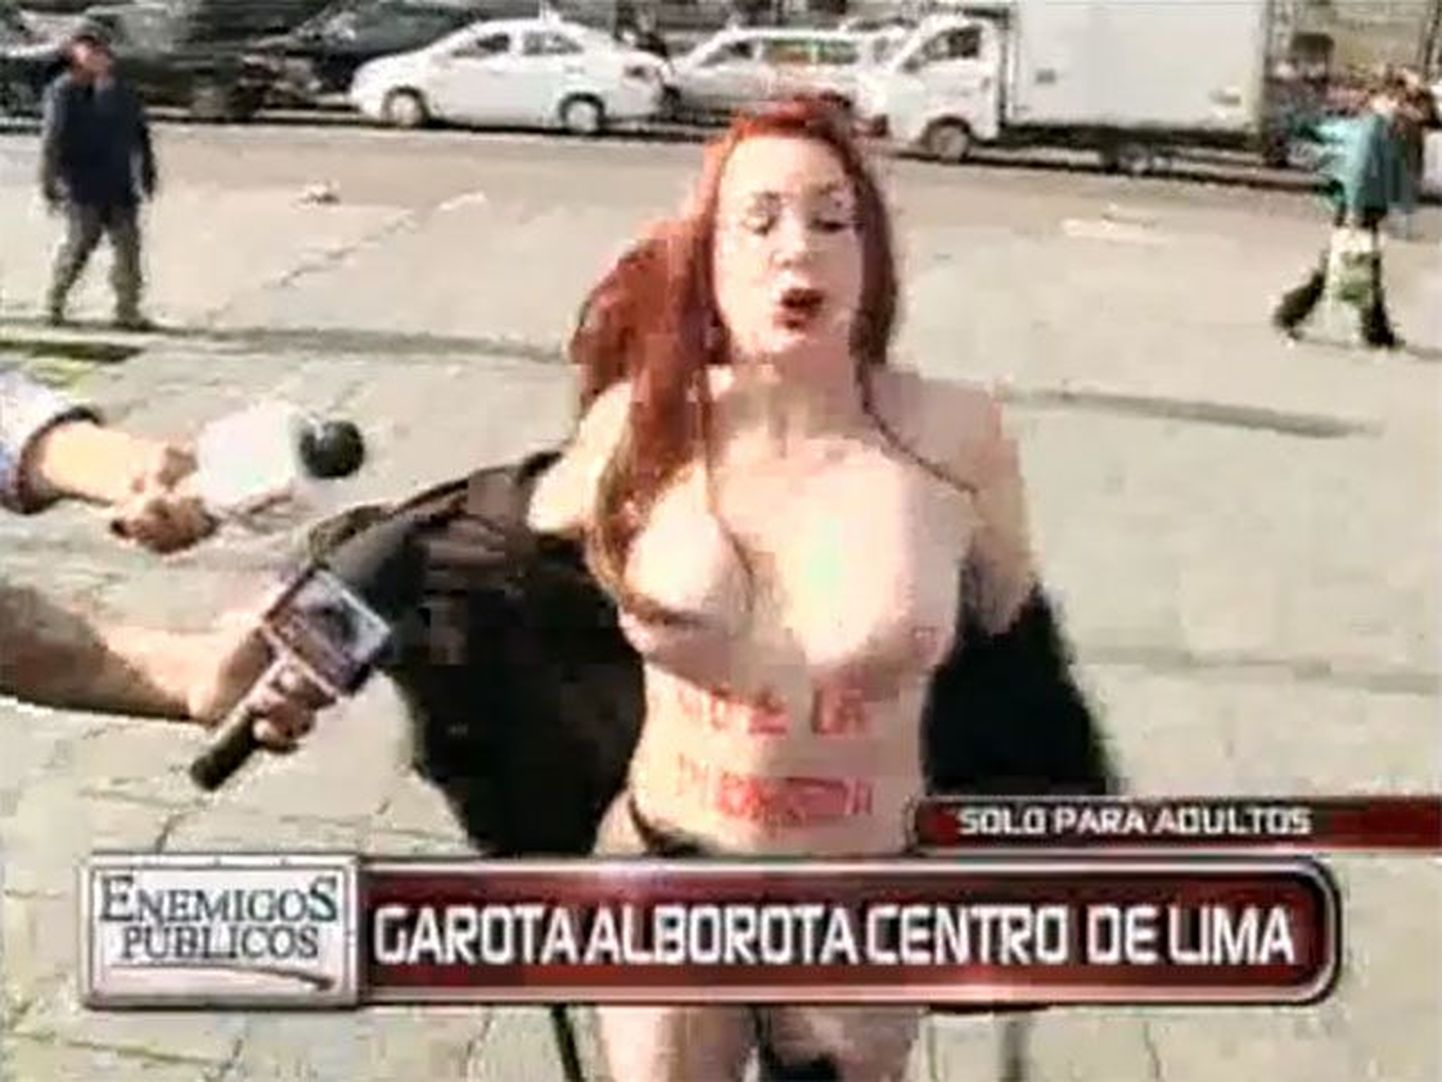 Бразильская писательница Ванесса де Оливьера устроила голую акцию в Лиме перед зданием правительства Перу.